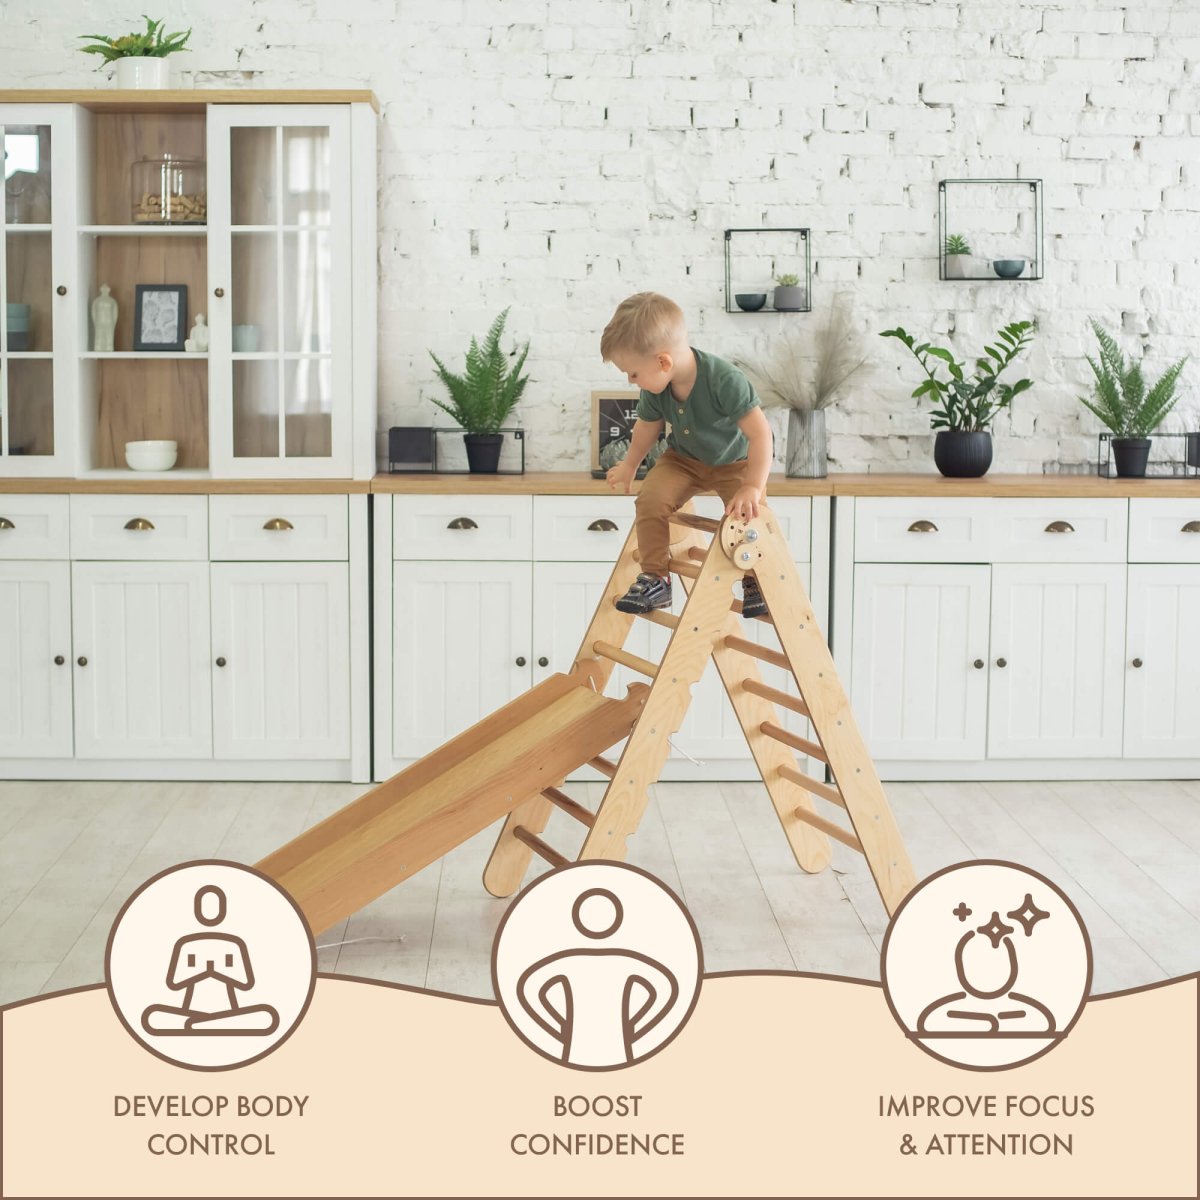 2in1 Montessori Climbing Set: Triangle Ladder + Slide Board/Ramp – Beige by Goodevas - Mothership Milk